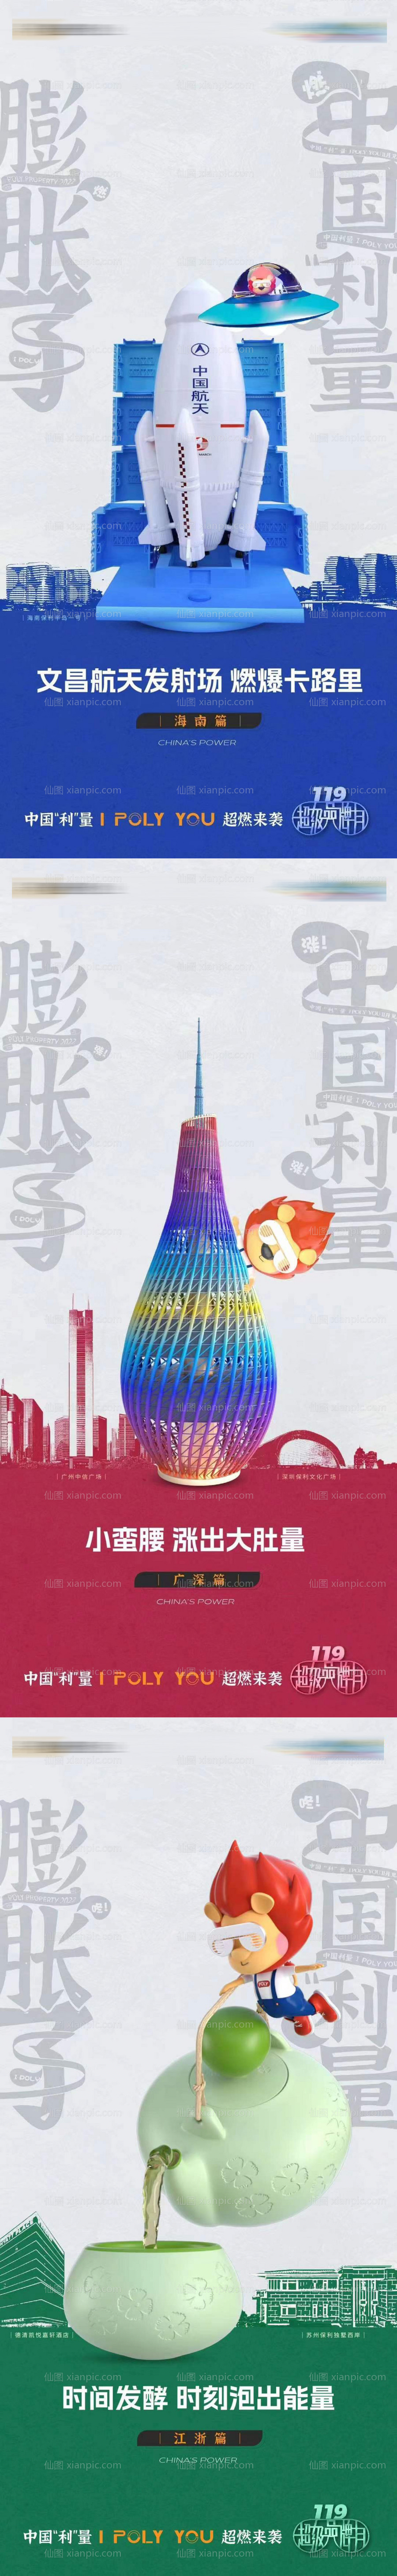 素材乐-中国航天事业热点海报